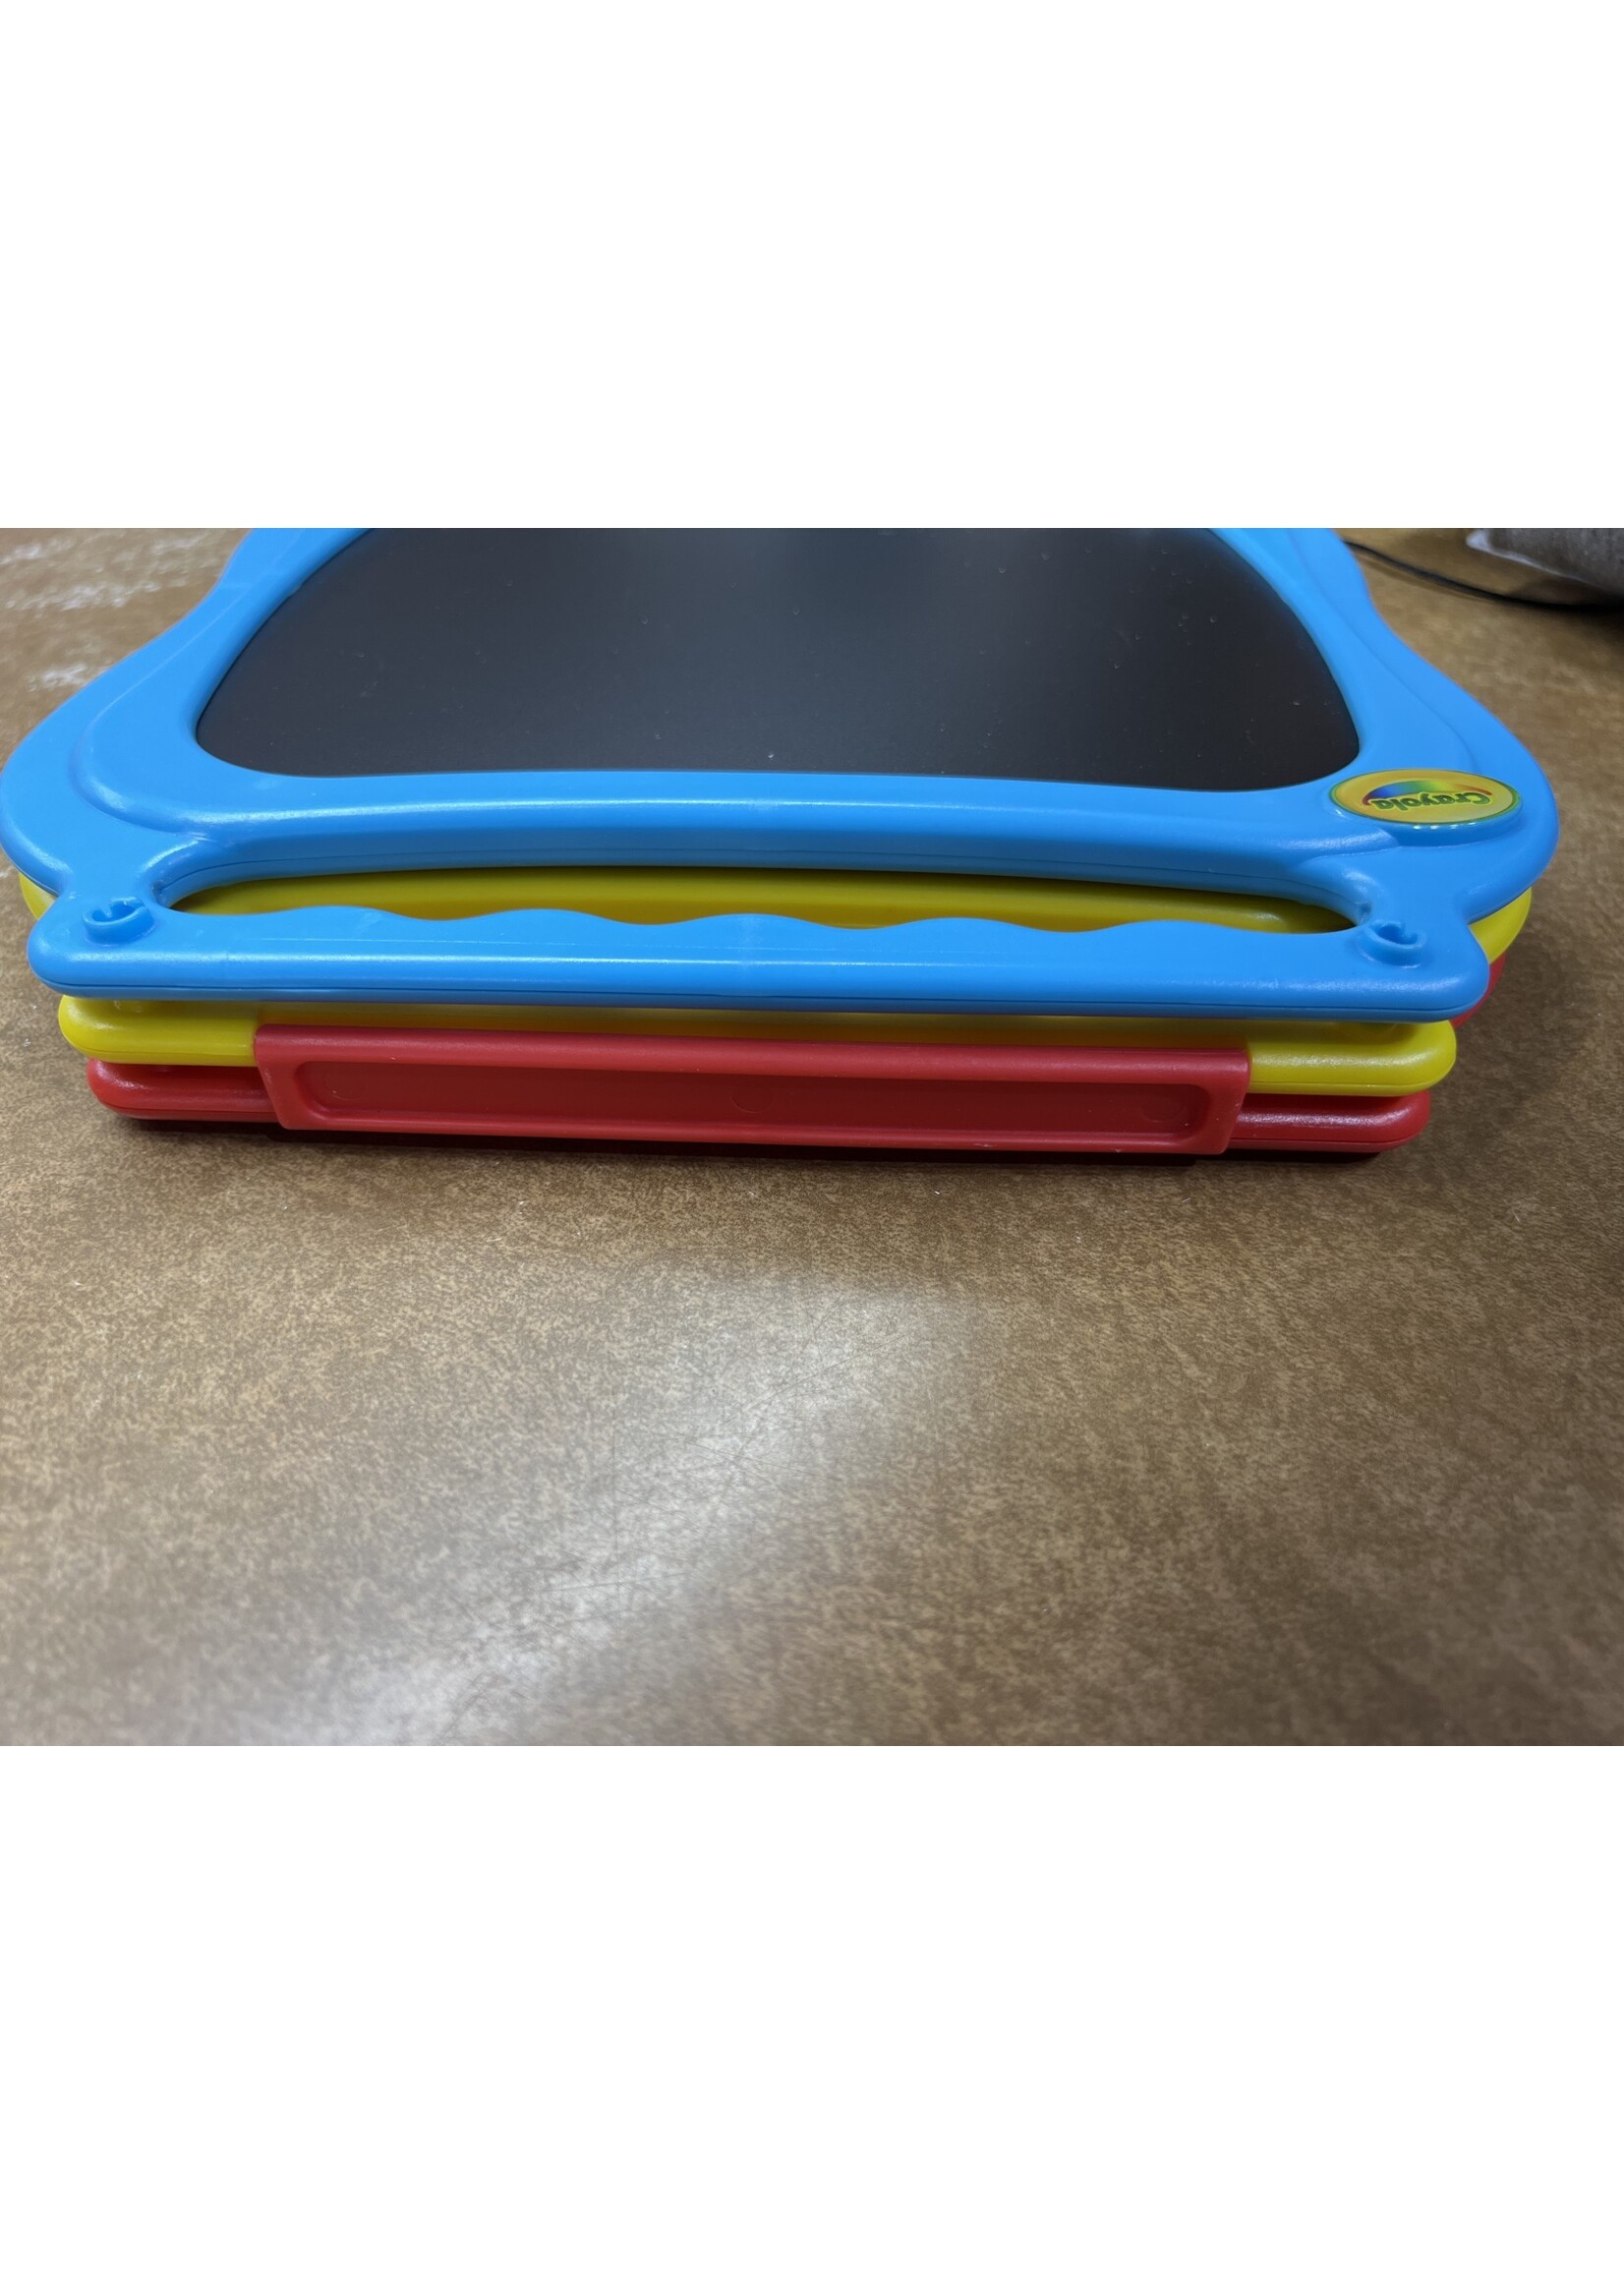 Broken hinge -no crayon- Crayola 5-in-1 Creative Fun Tabletop Easel